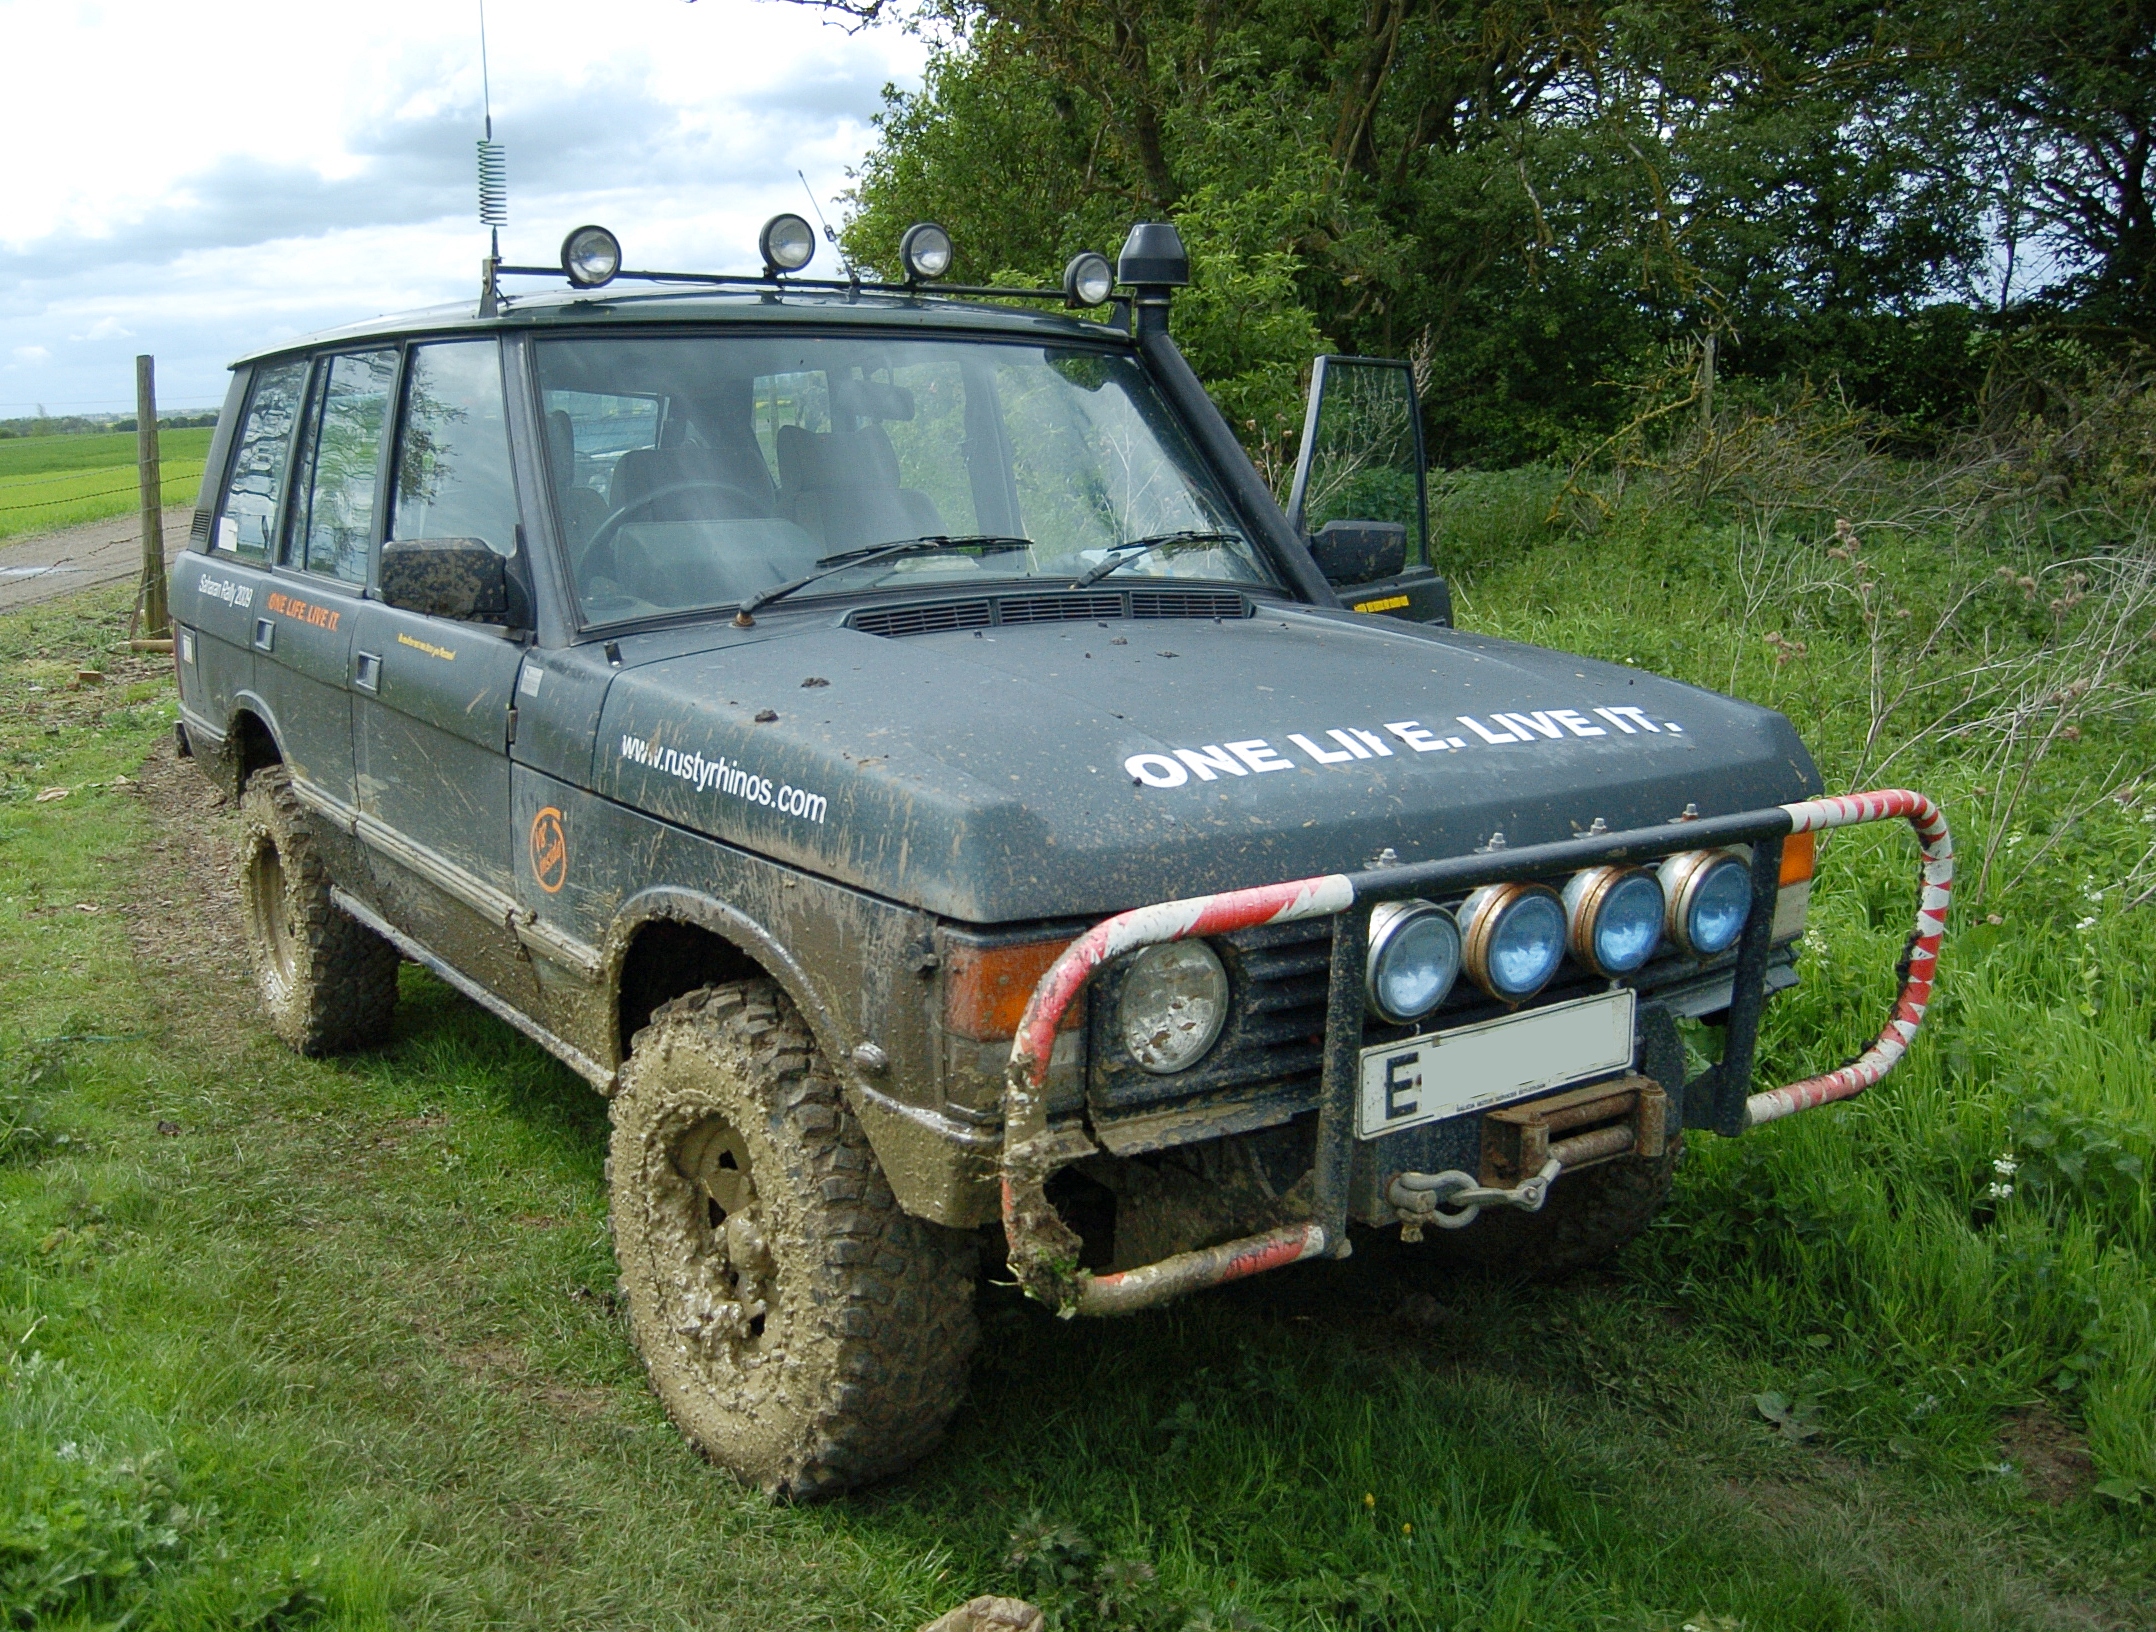 Muddy Range Rover